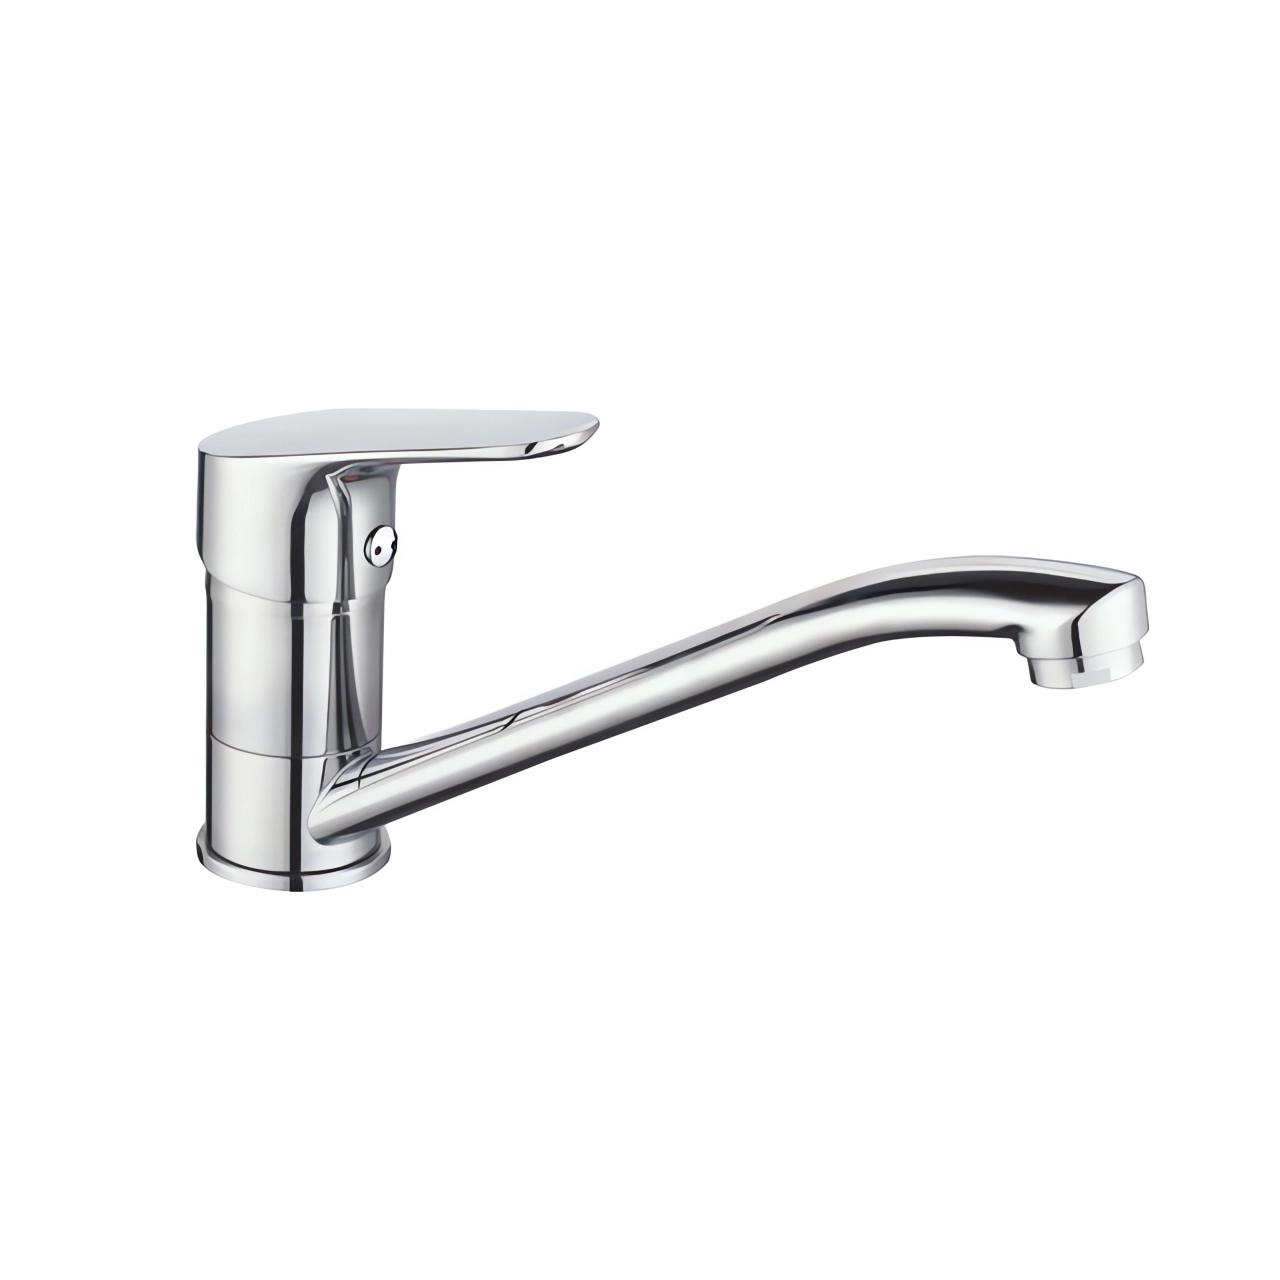 OJ-J2447H Kitchen Sink Tap Chrome Reverse Osmosis 360° Rotation Design Faucet Single Handle Faucet Zinc Alloy Kitchen Faucet